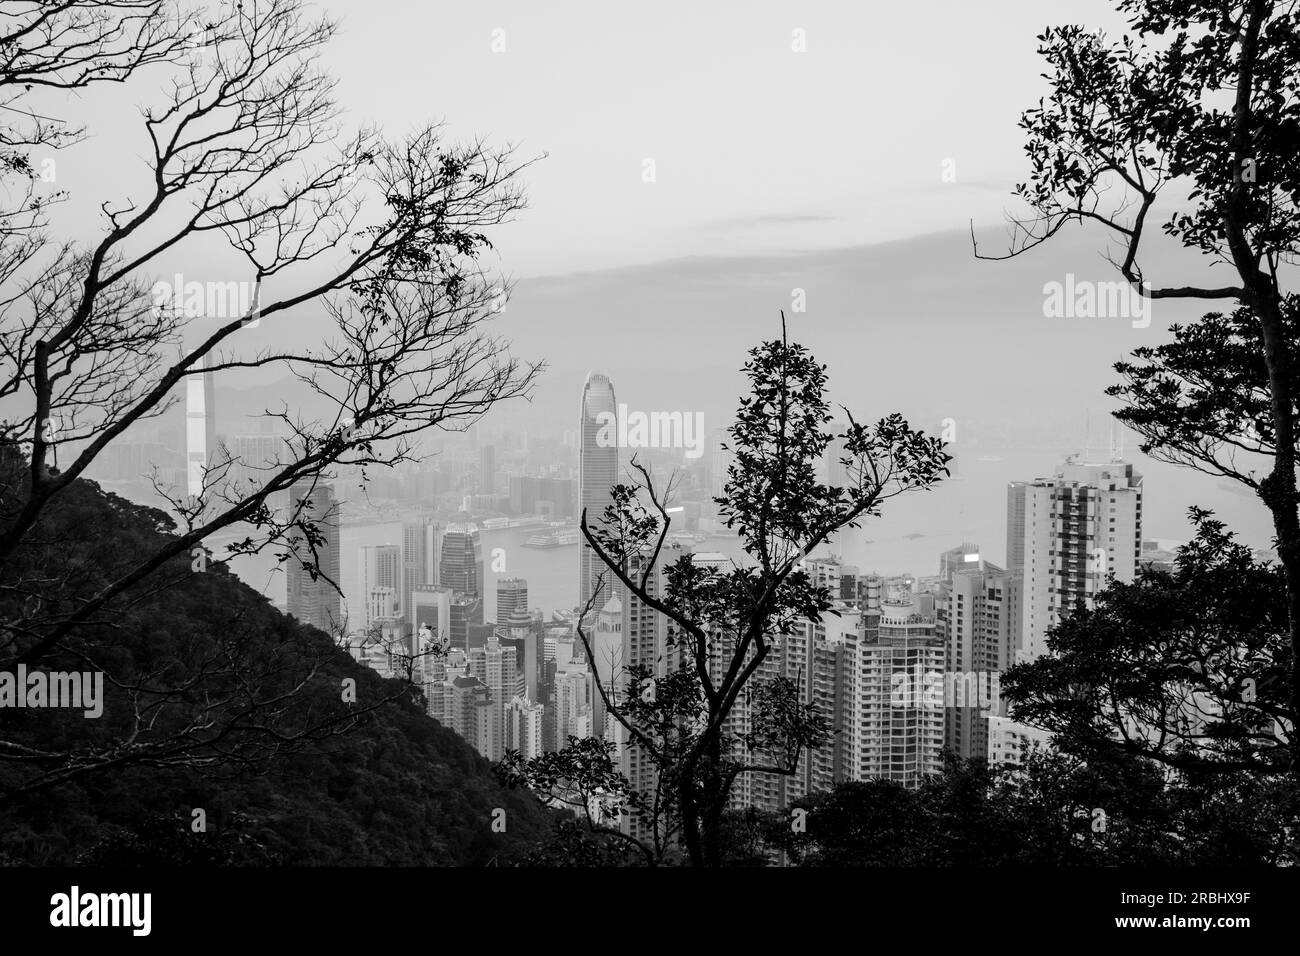 Incredibili vedute dello skyline della città dal Lugard Road Lookout sul Victoria Peak, Hong Kong in una serata estiva mentre l'ultima luce del giorno colpisce i blocchi della torre. Foto Stock